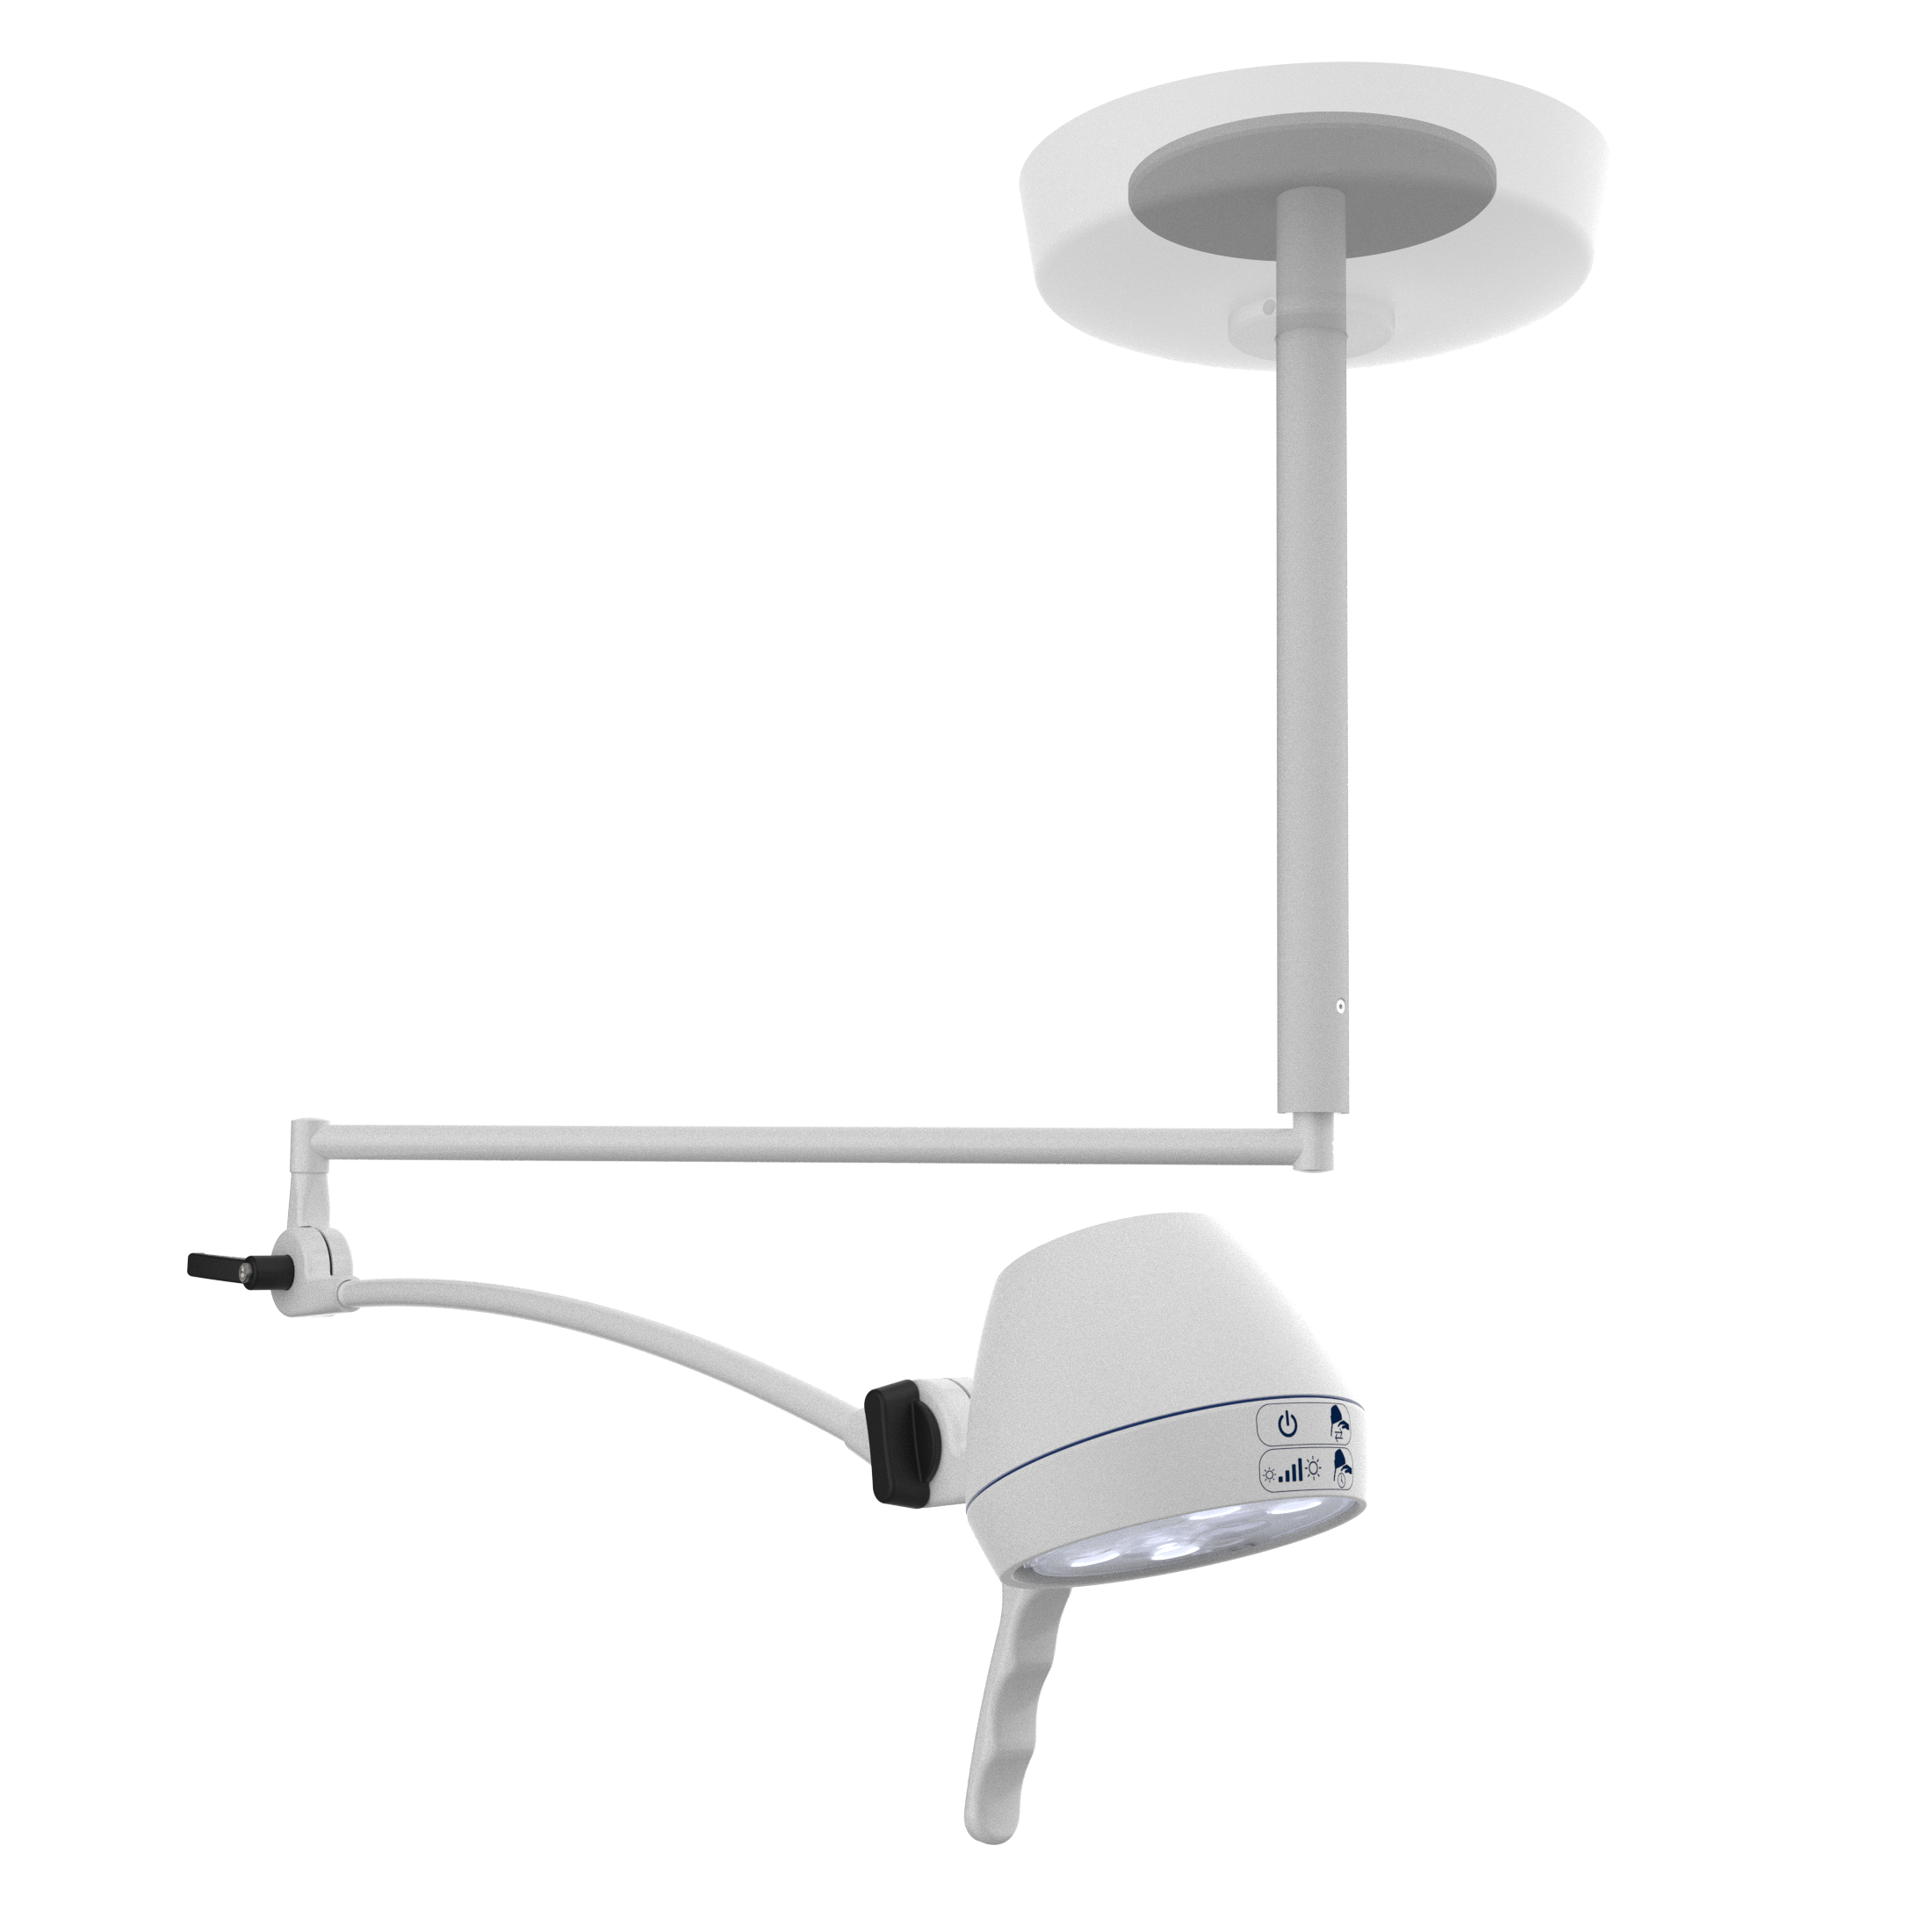 Series 1-100 - Ceiling examination lamp